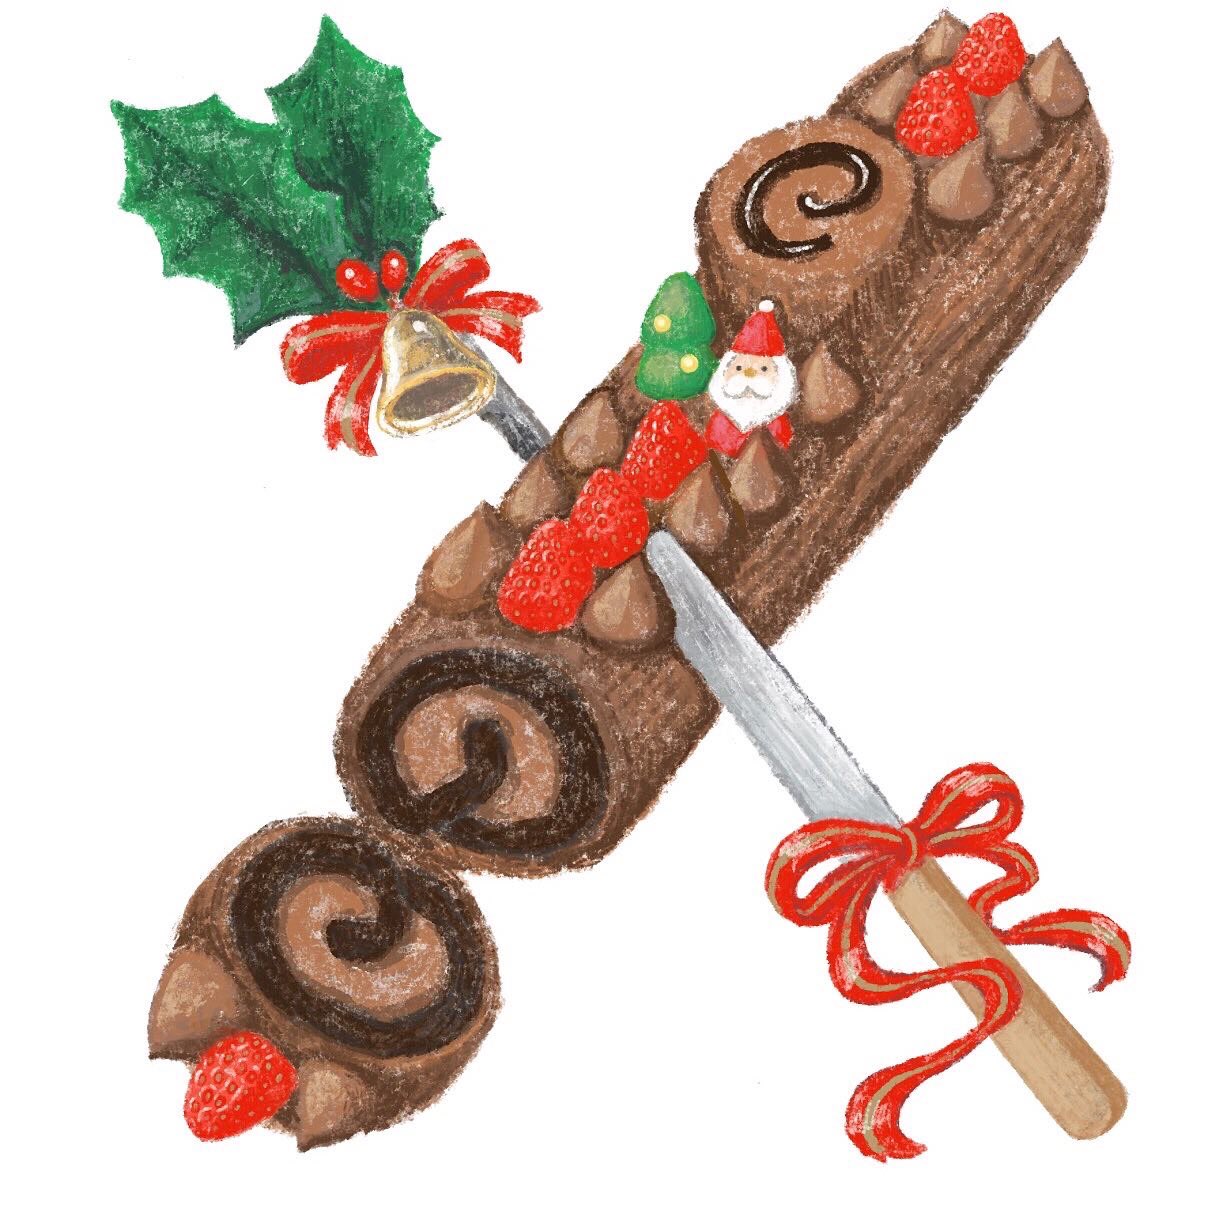 Kanako Ikegaya Ikca Drawing たべものatoz Xmascake 季節外れのクリスマスケーキ ブッシュドノエルにサンタさん あと2枚で完成です たべものatoz 食べ物イラスト T Co Bef8udvmiw Twitter